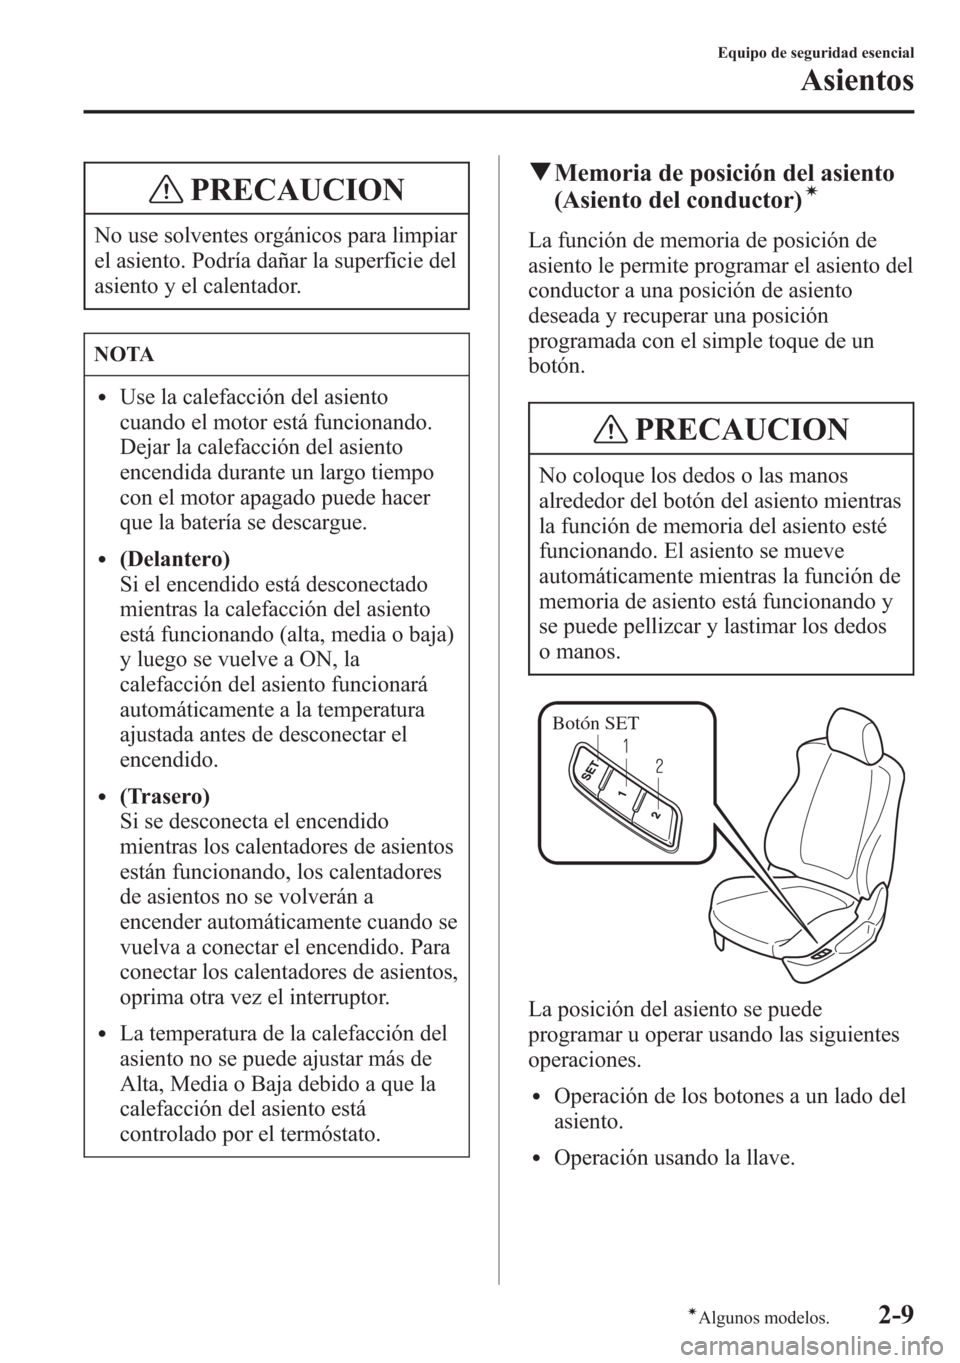 MAZDA MODEL 6 2015  Manual del propietario (in Spanish) PRECAUCION
No use solventes orgánicos para limpiar
el asiento. Podría dañar la superficie del
asiento y el calentador.
NOTA
lUse la calefacción del asiento
cuando el motor está funcionando.
Dejar